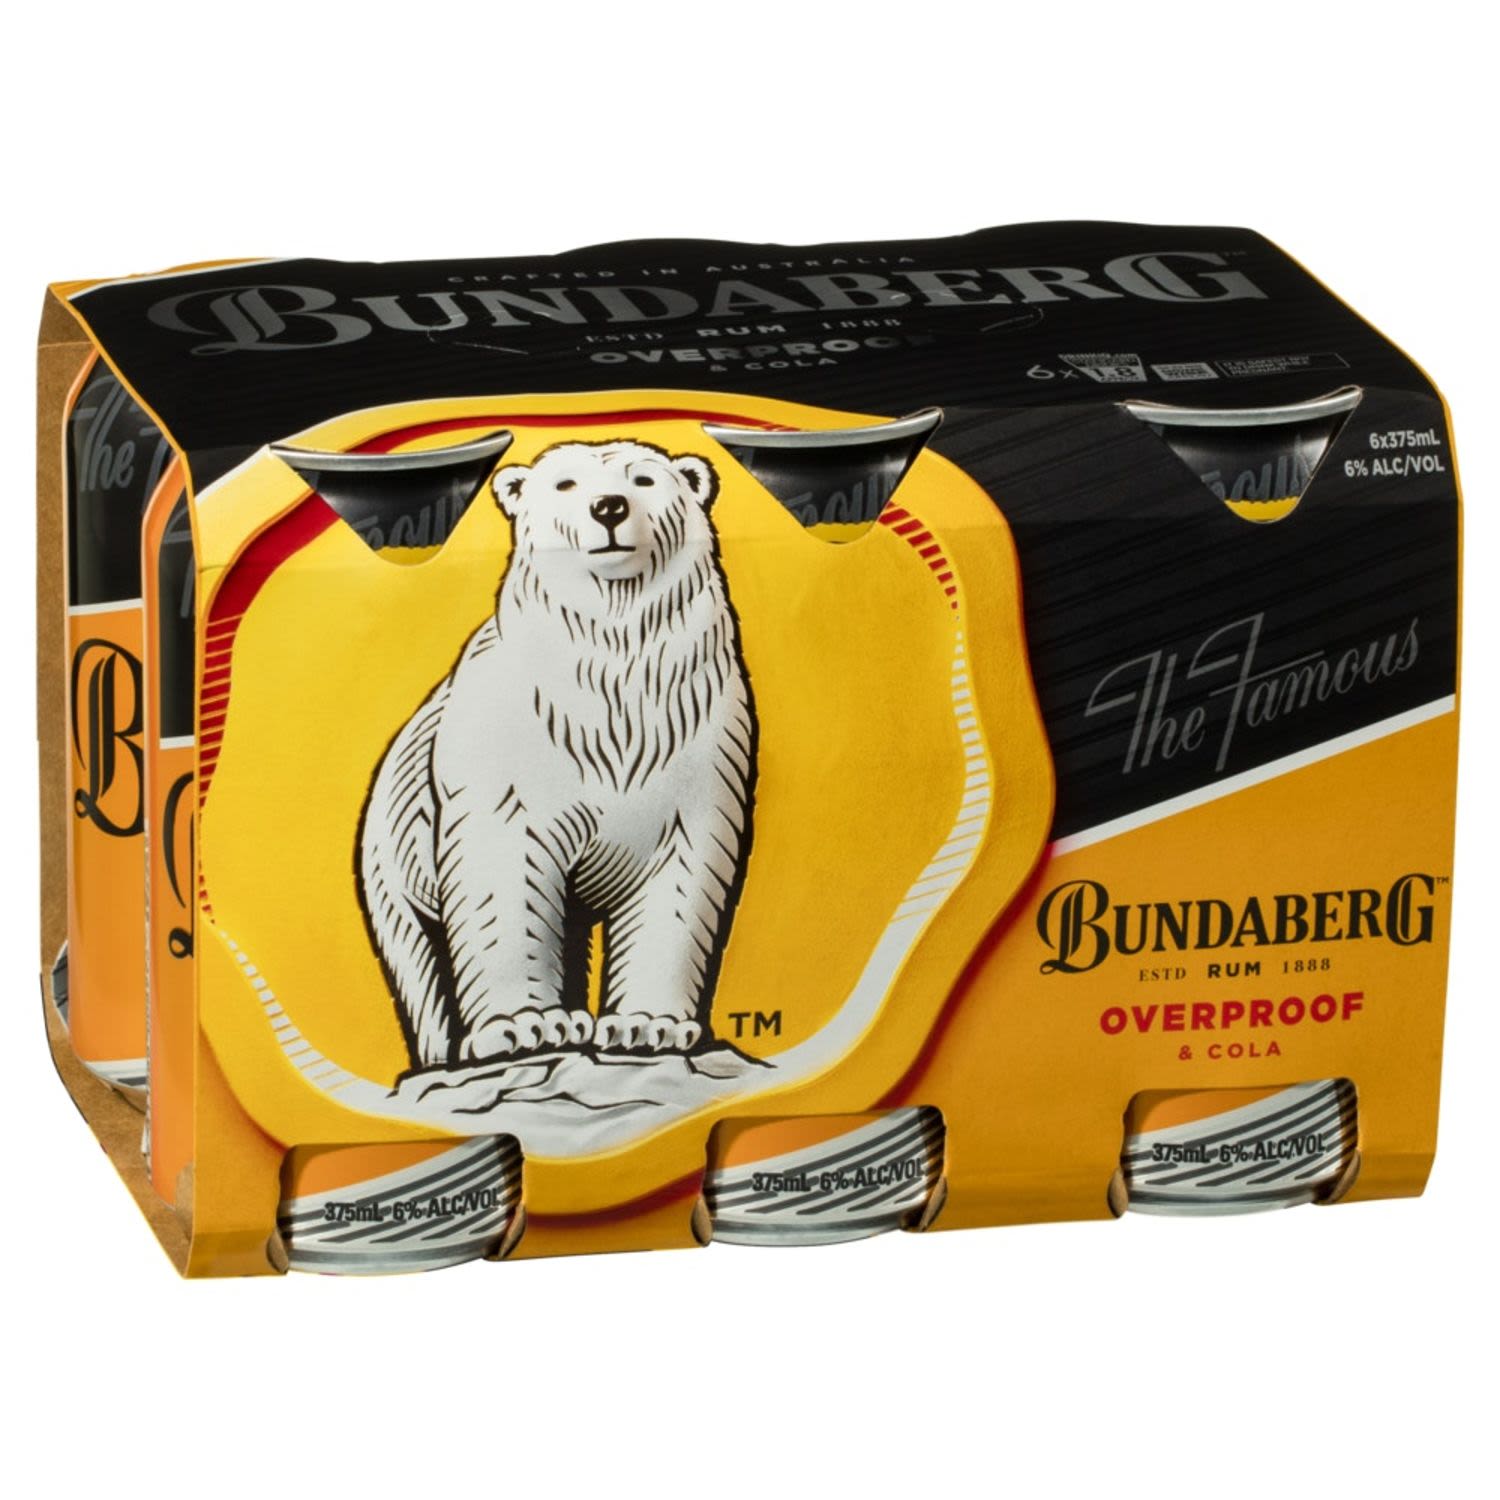 Bundaberg Overproof Rum & Cola Can 375mL 6 Pack